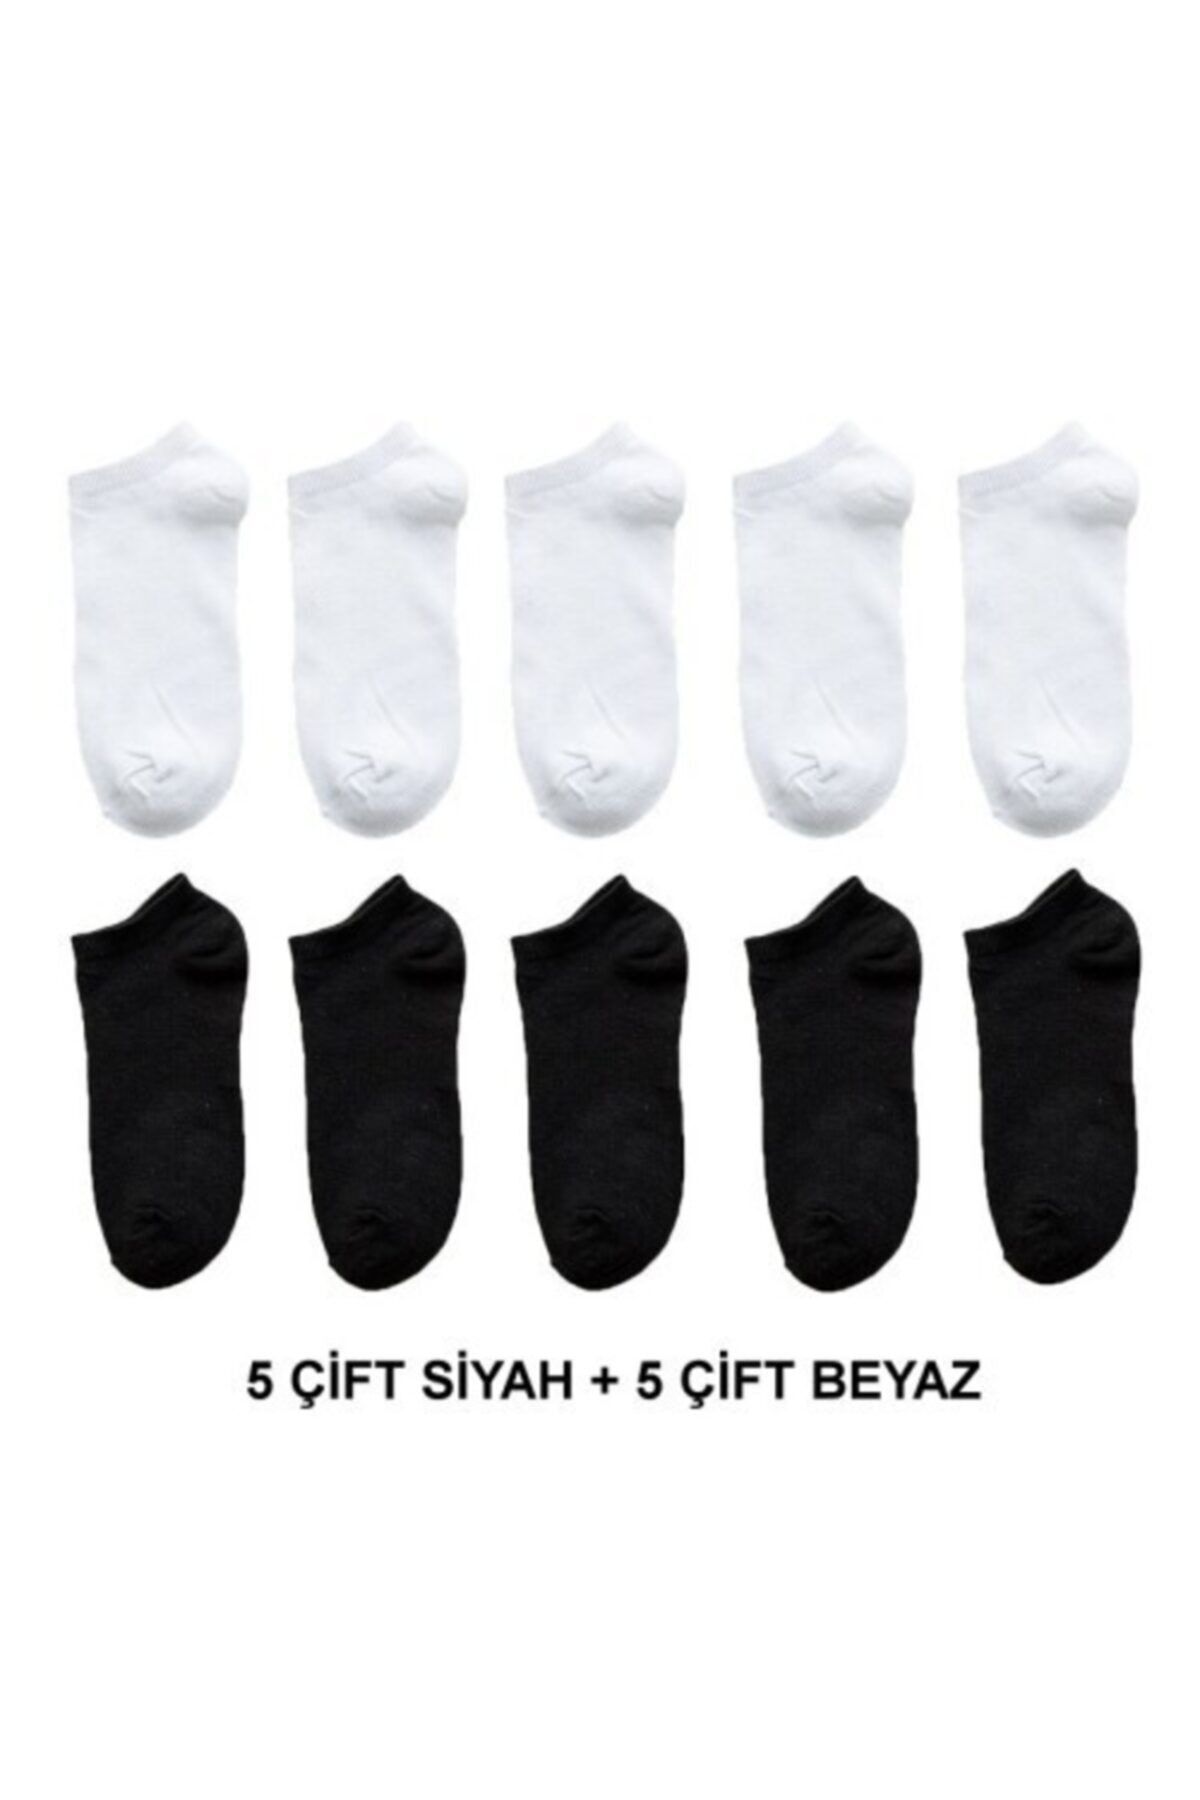 çorapmanya Kadın 10 Çift Koton Ekonomik Siyah + Beyaz Renk Patik Çorap